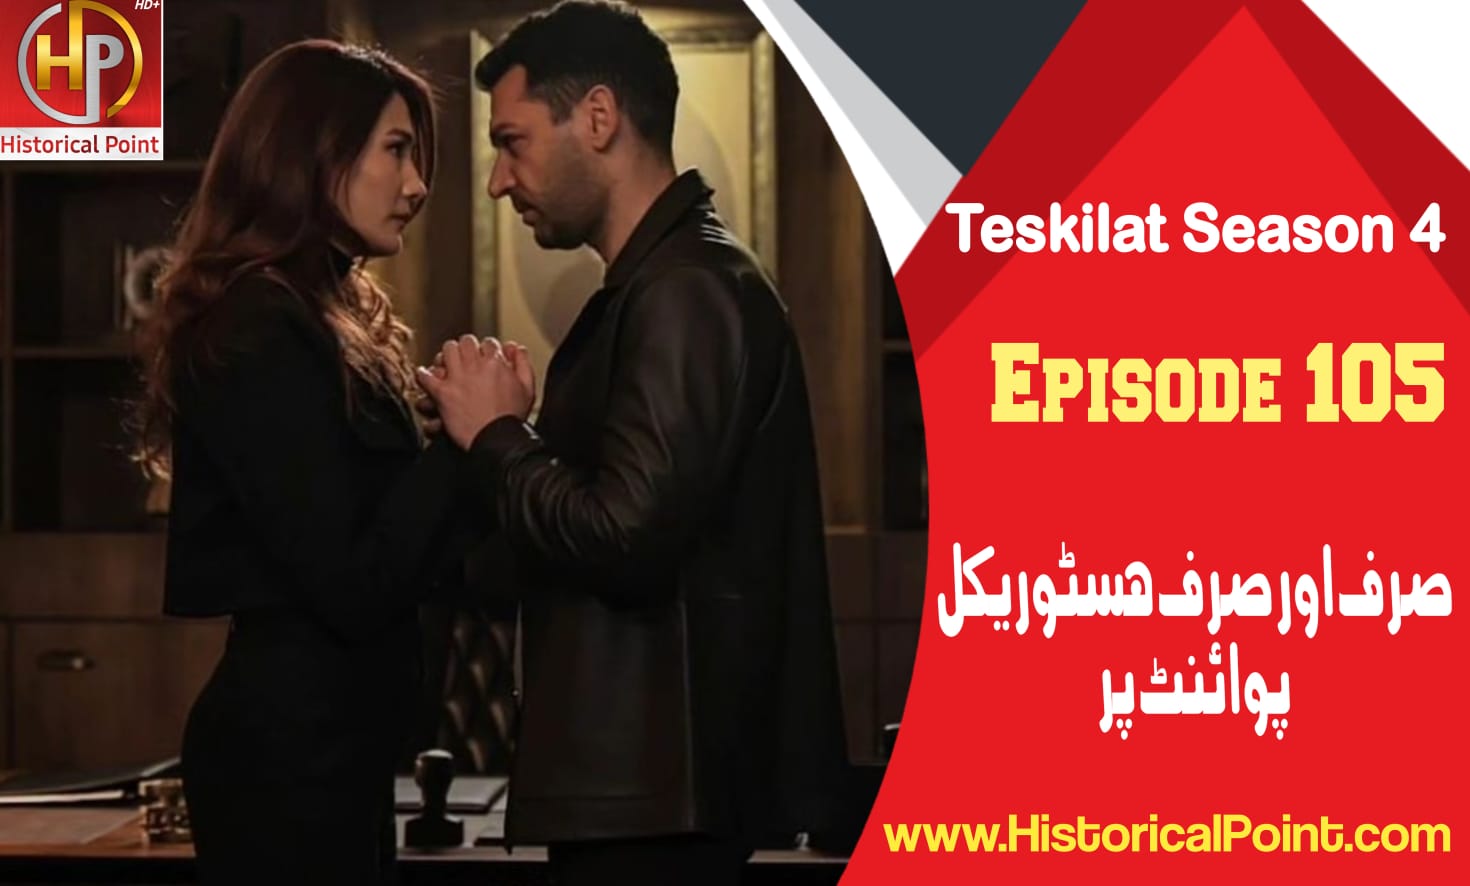 Teskilat Episode 105 in Urdu Subtitles